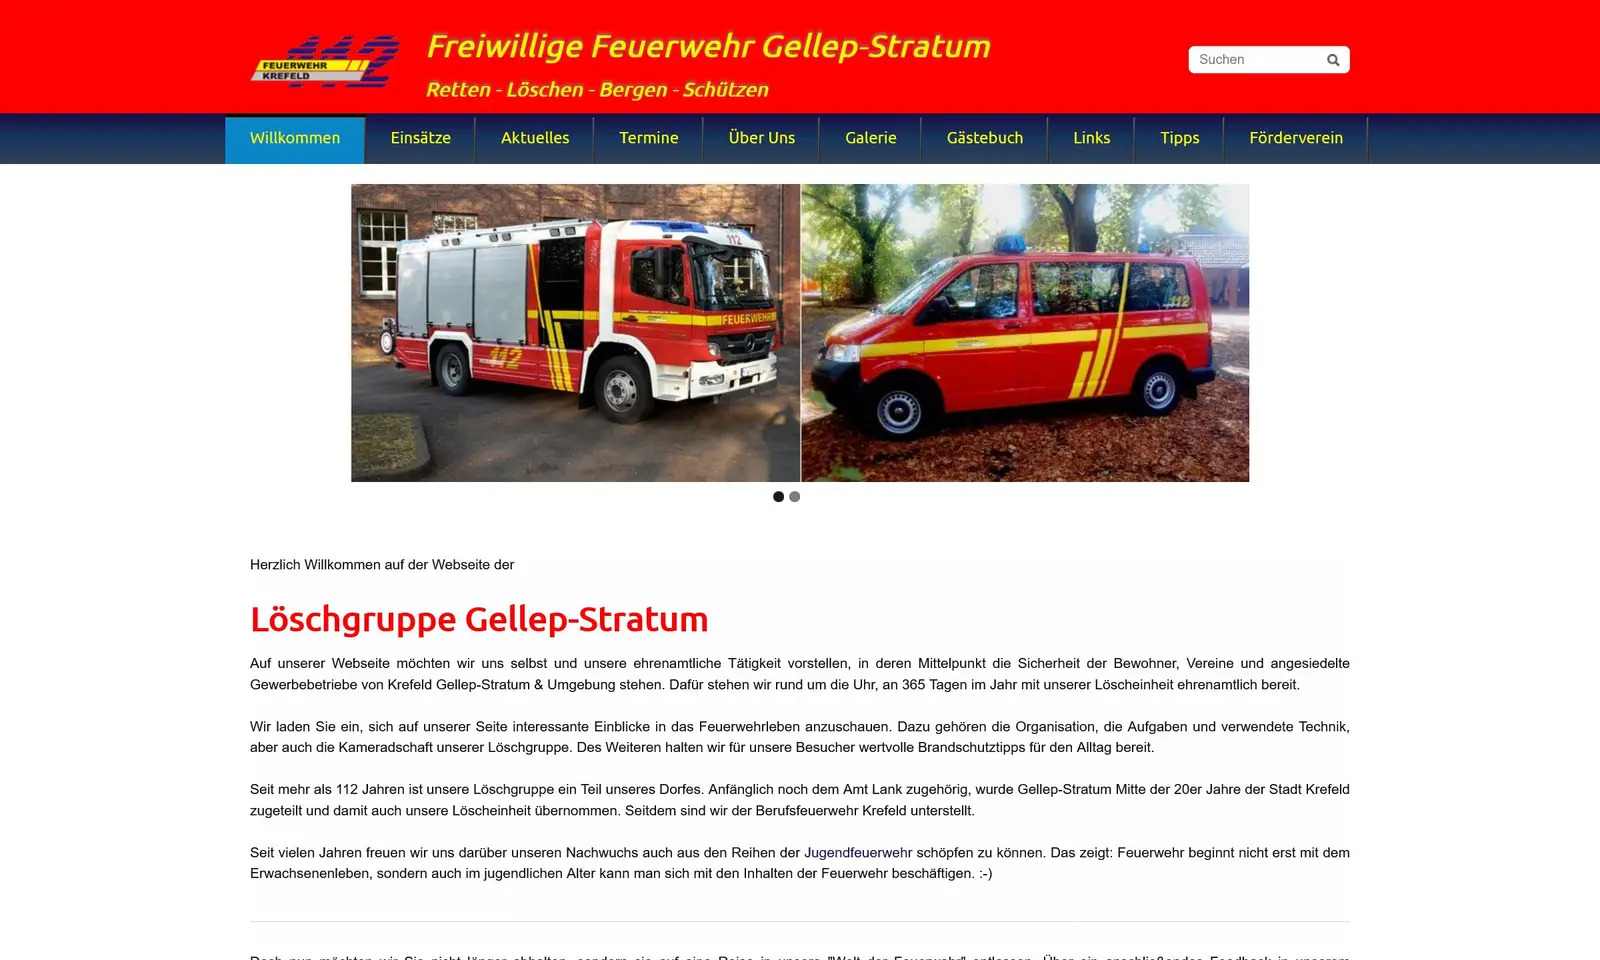 Screenshot von der Webseite "Feuerwehr Gellep-Stratum"